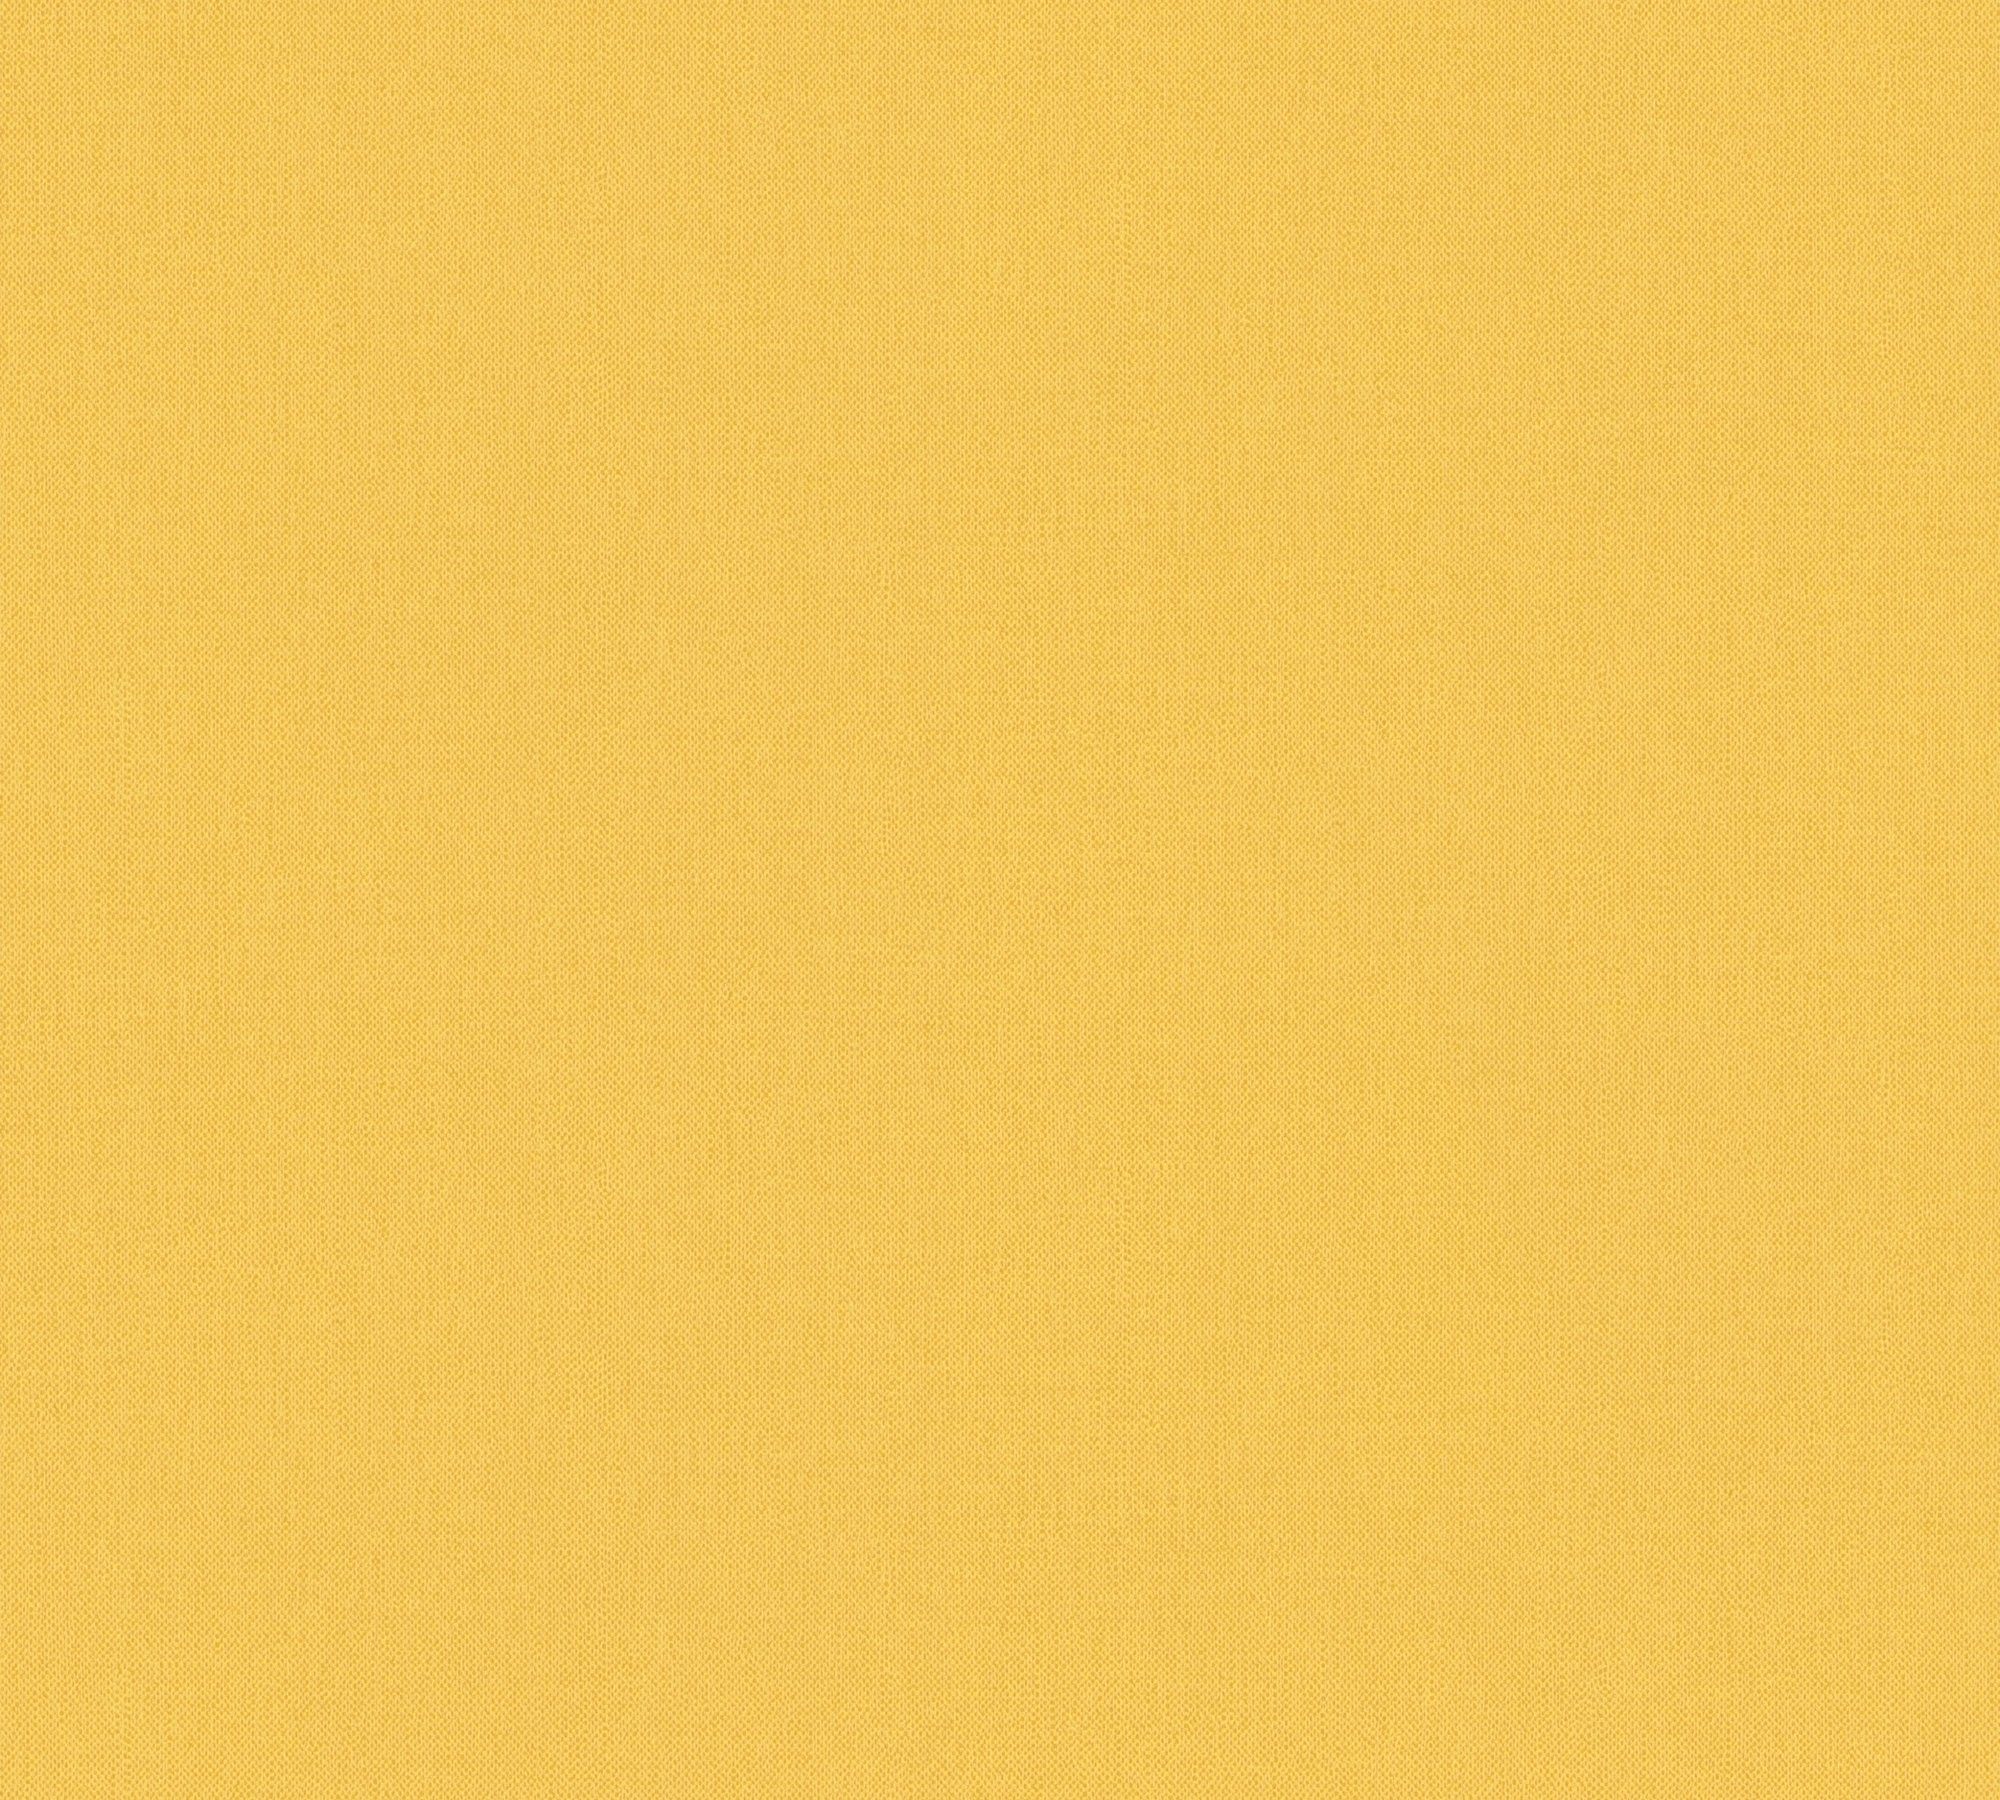 Vliestapete gelb Floral unifarben, einfarbig, Paper Architects Tapete Impression, einfarbig Uni glatt,